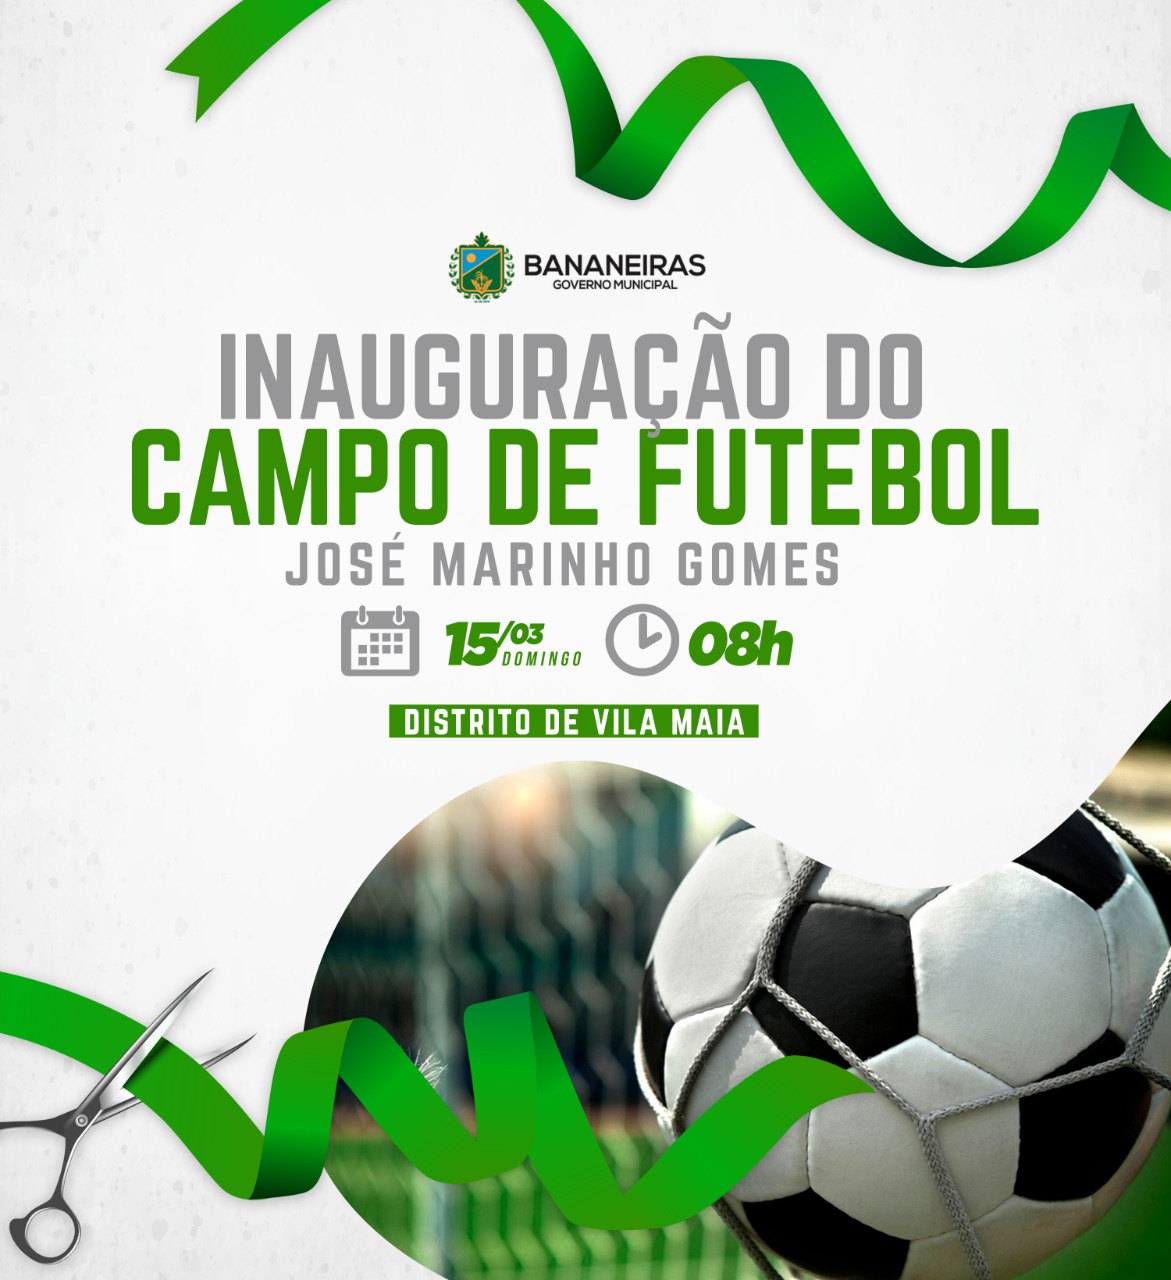 Inauguração do campo de Vila Maia, José Marinho Gomes, acontece neste domingo com torneio de São José